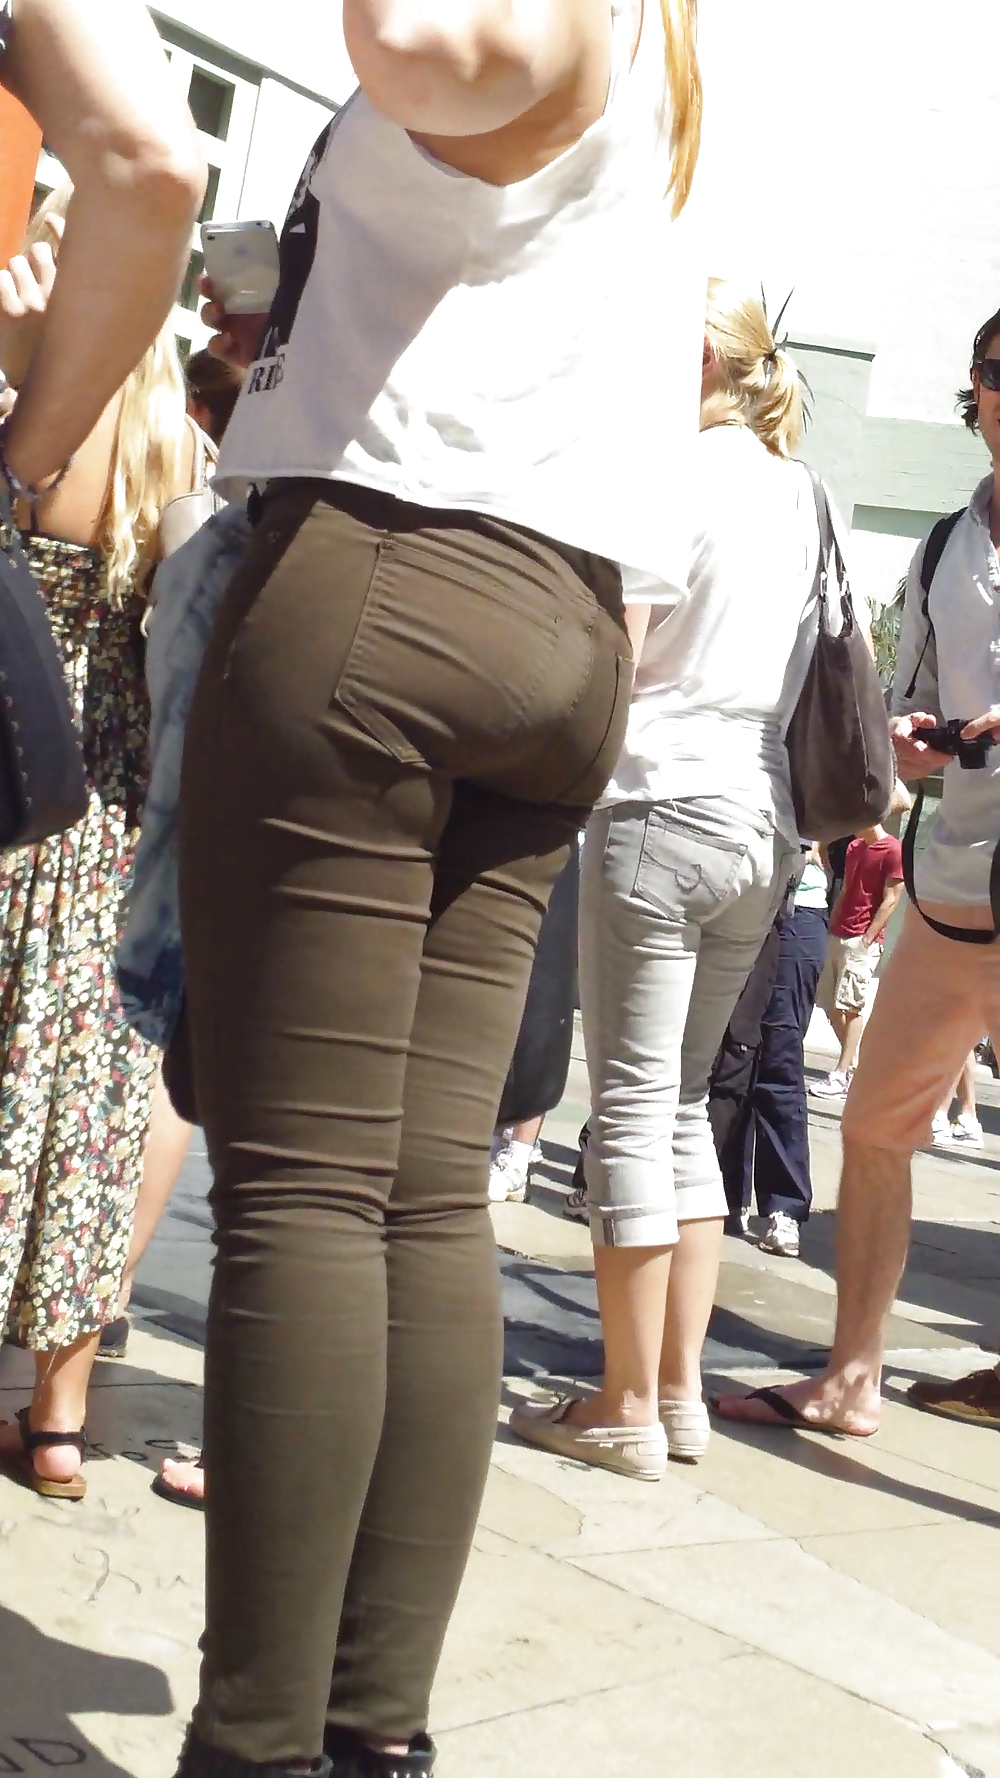 Spanish teen bubble butt & ass in pants #21202625